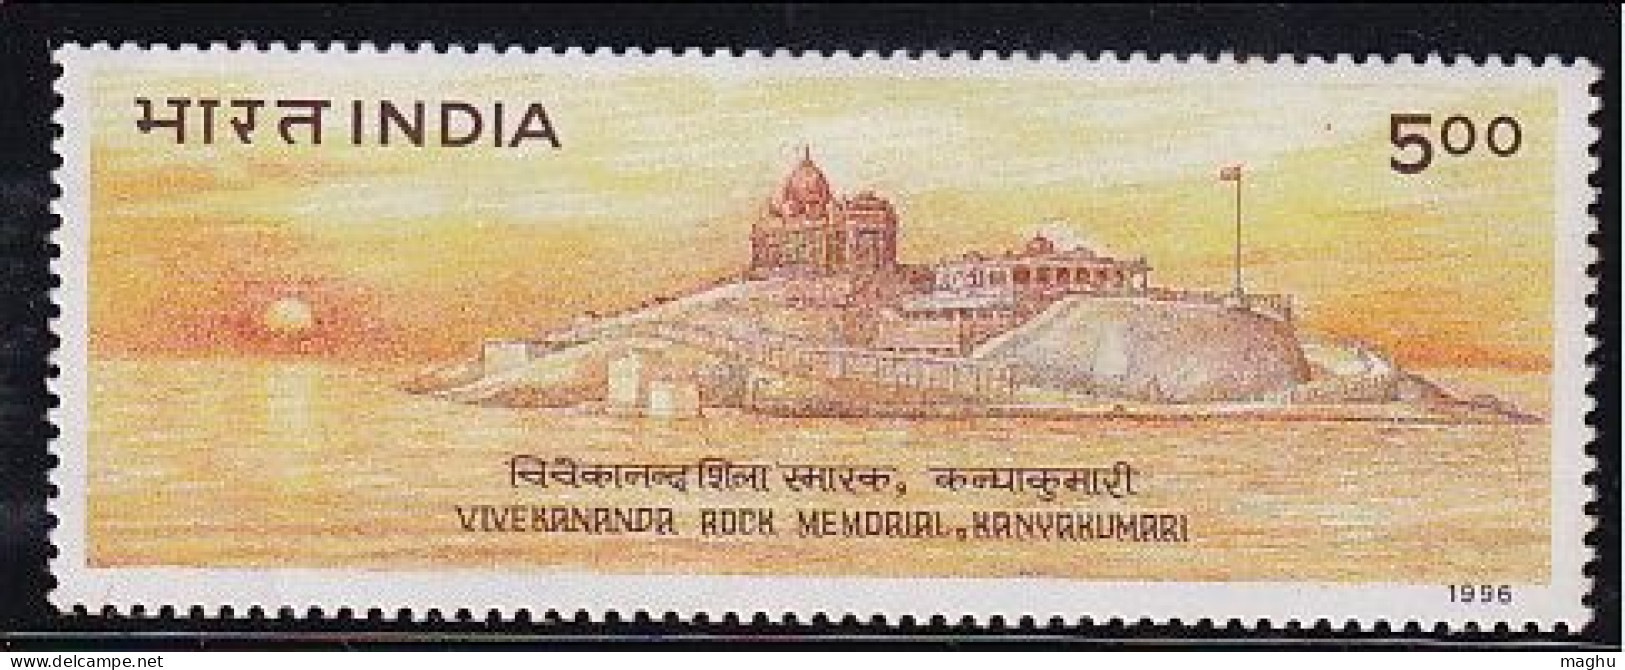 India MNH 1996, Vivekananda Rock Memorial, Kanyakumari, Flag, Sun, Astronomy, Cond.,stains - Ongebruikt